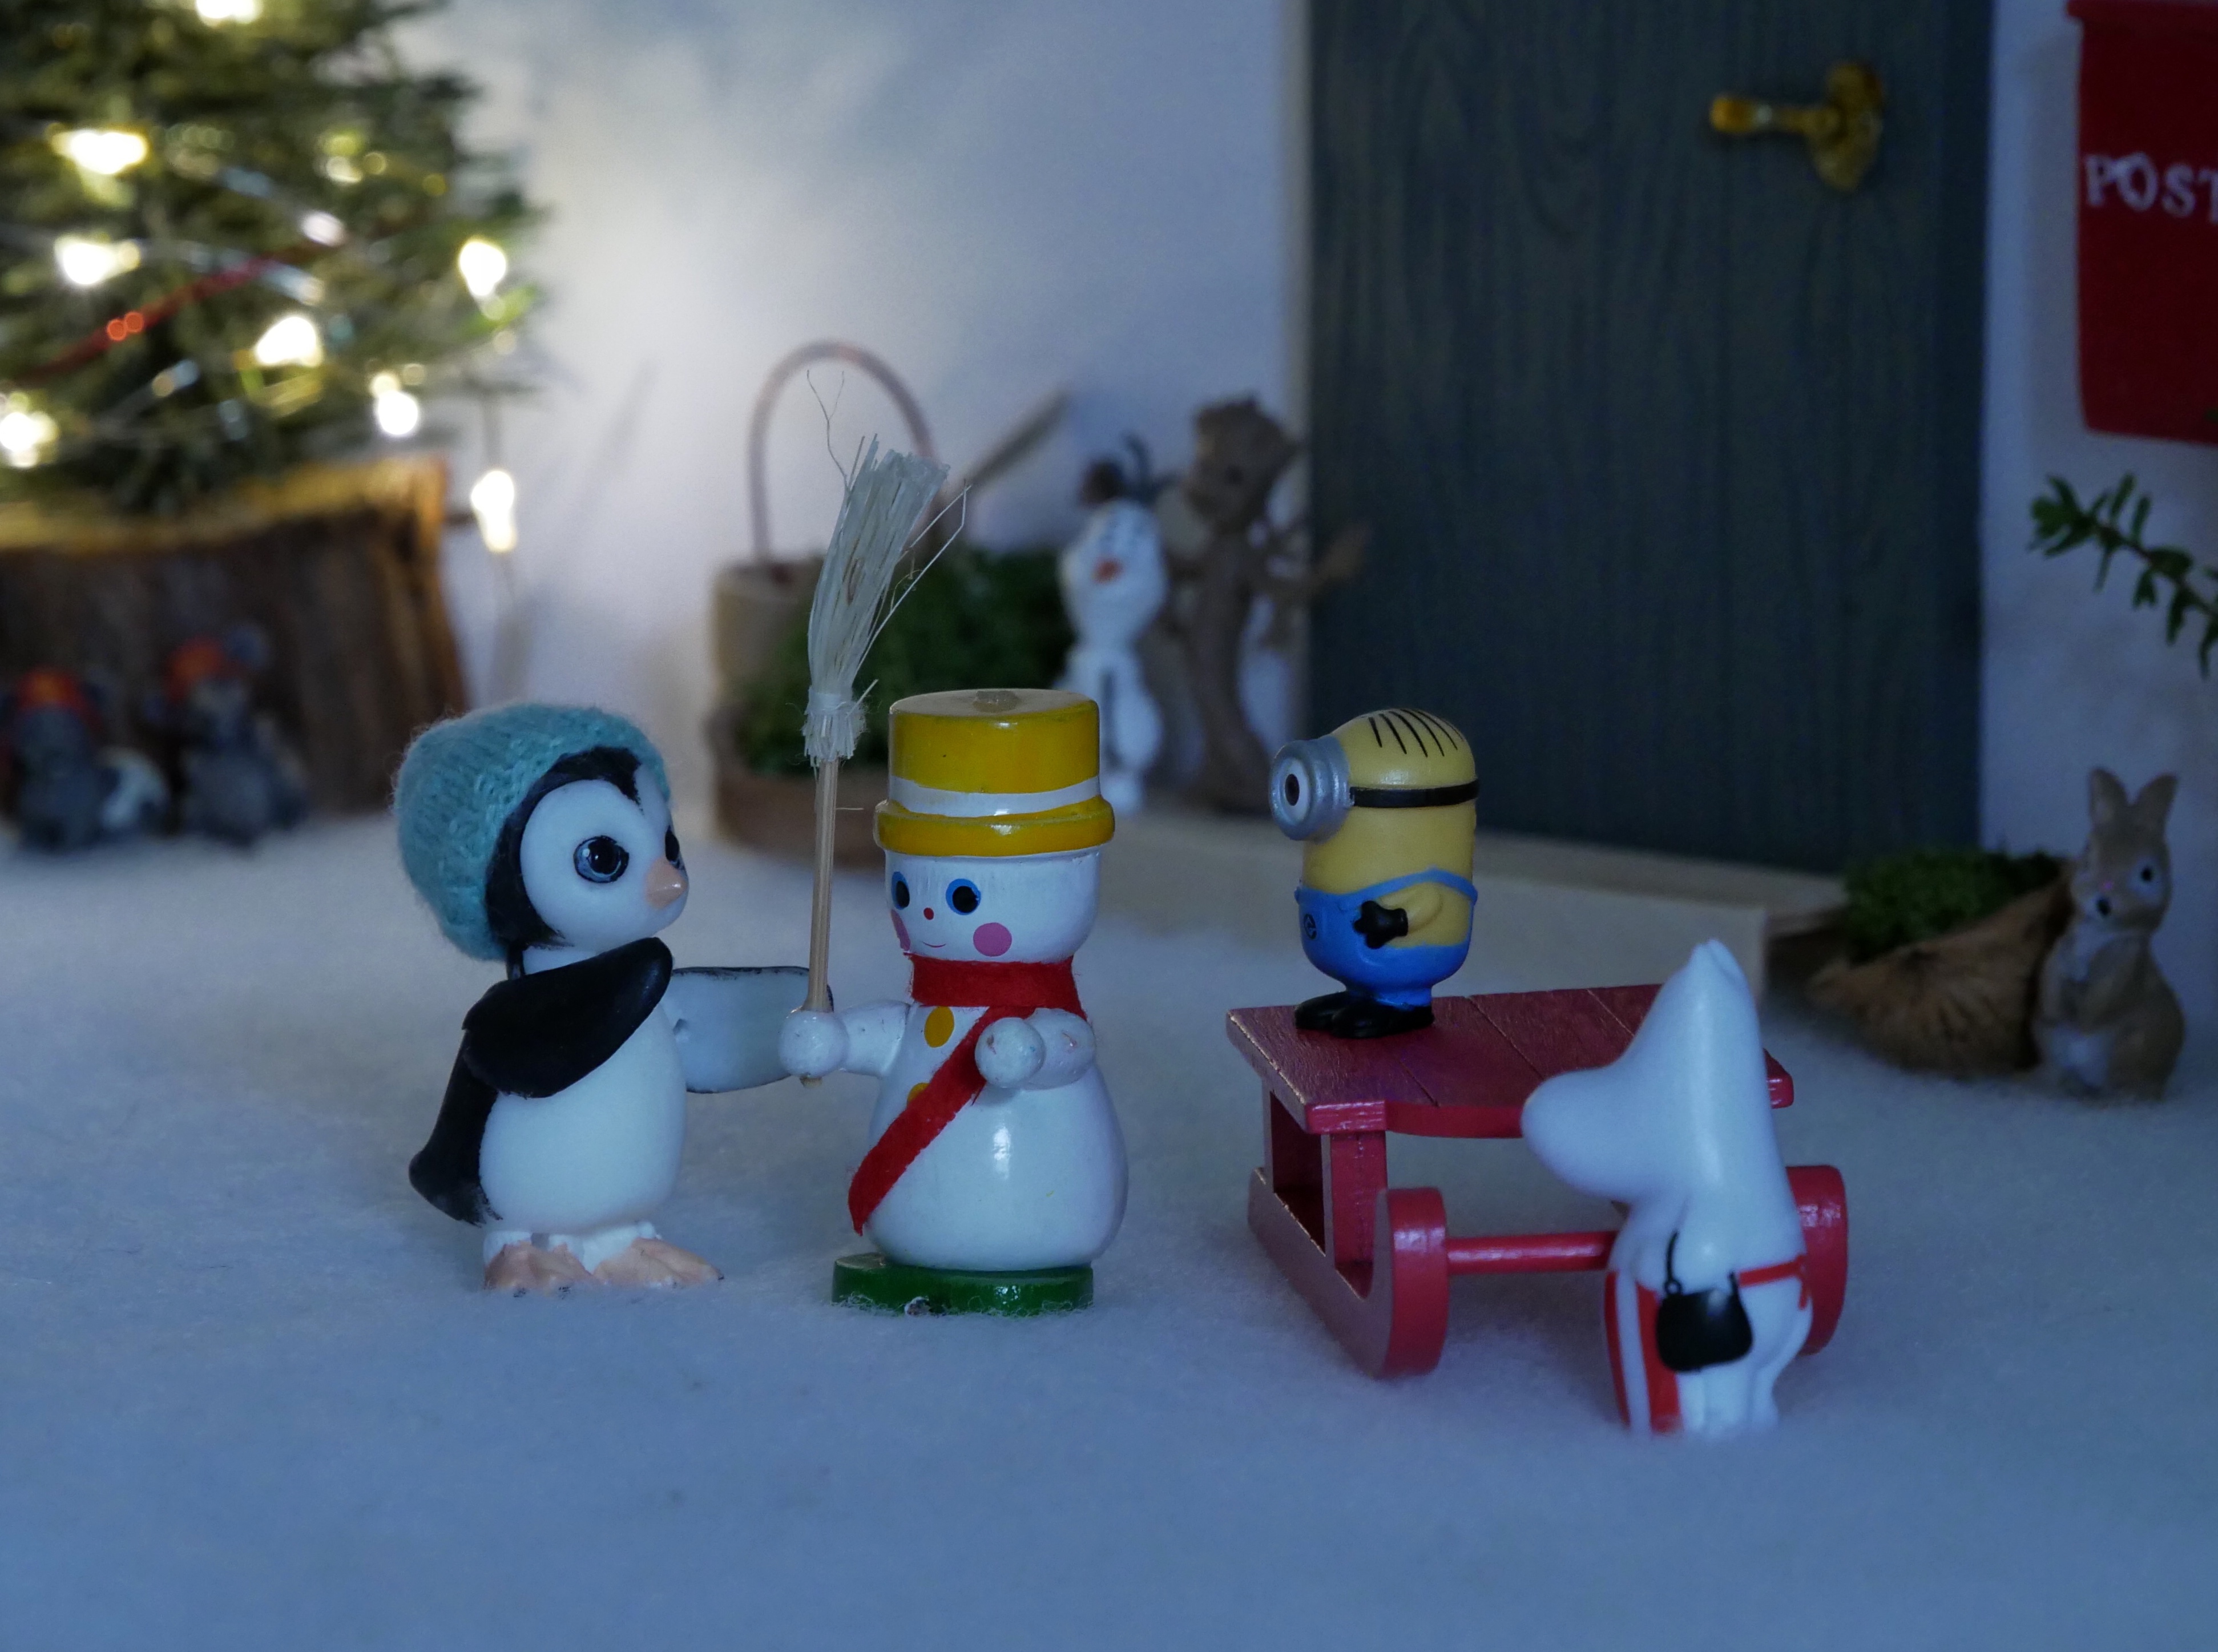 Ponk builds a snowman